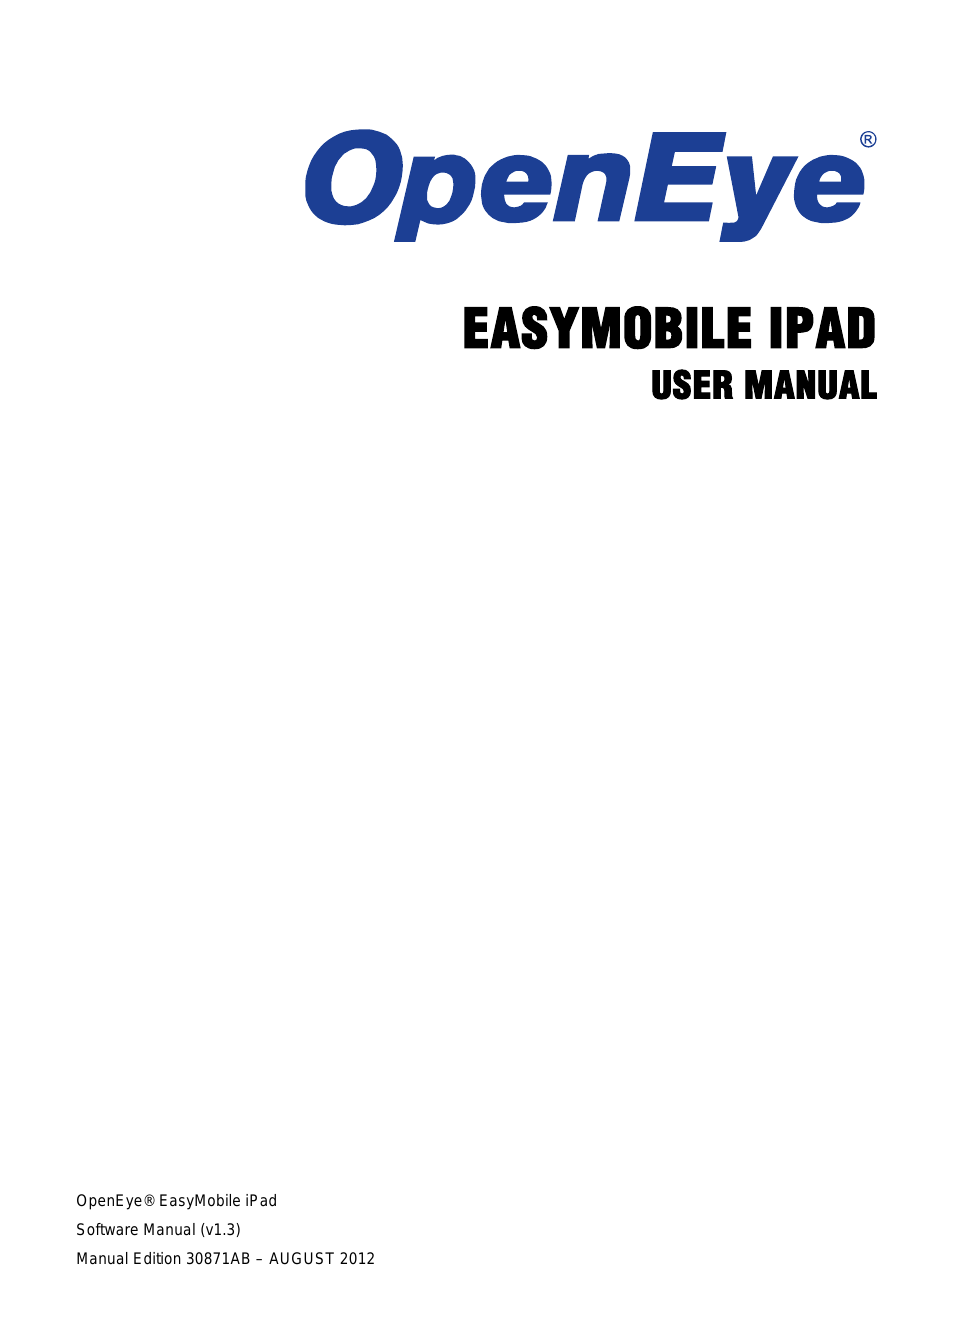 iPad EasyMobile